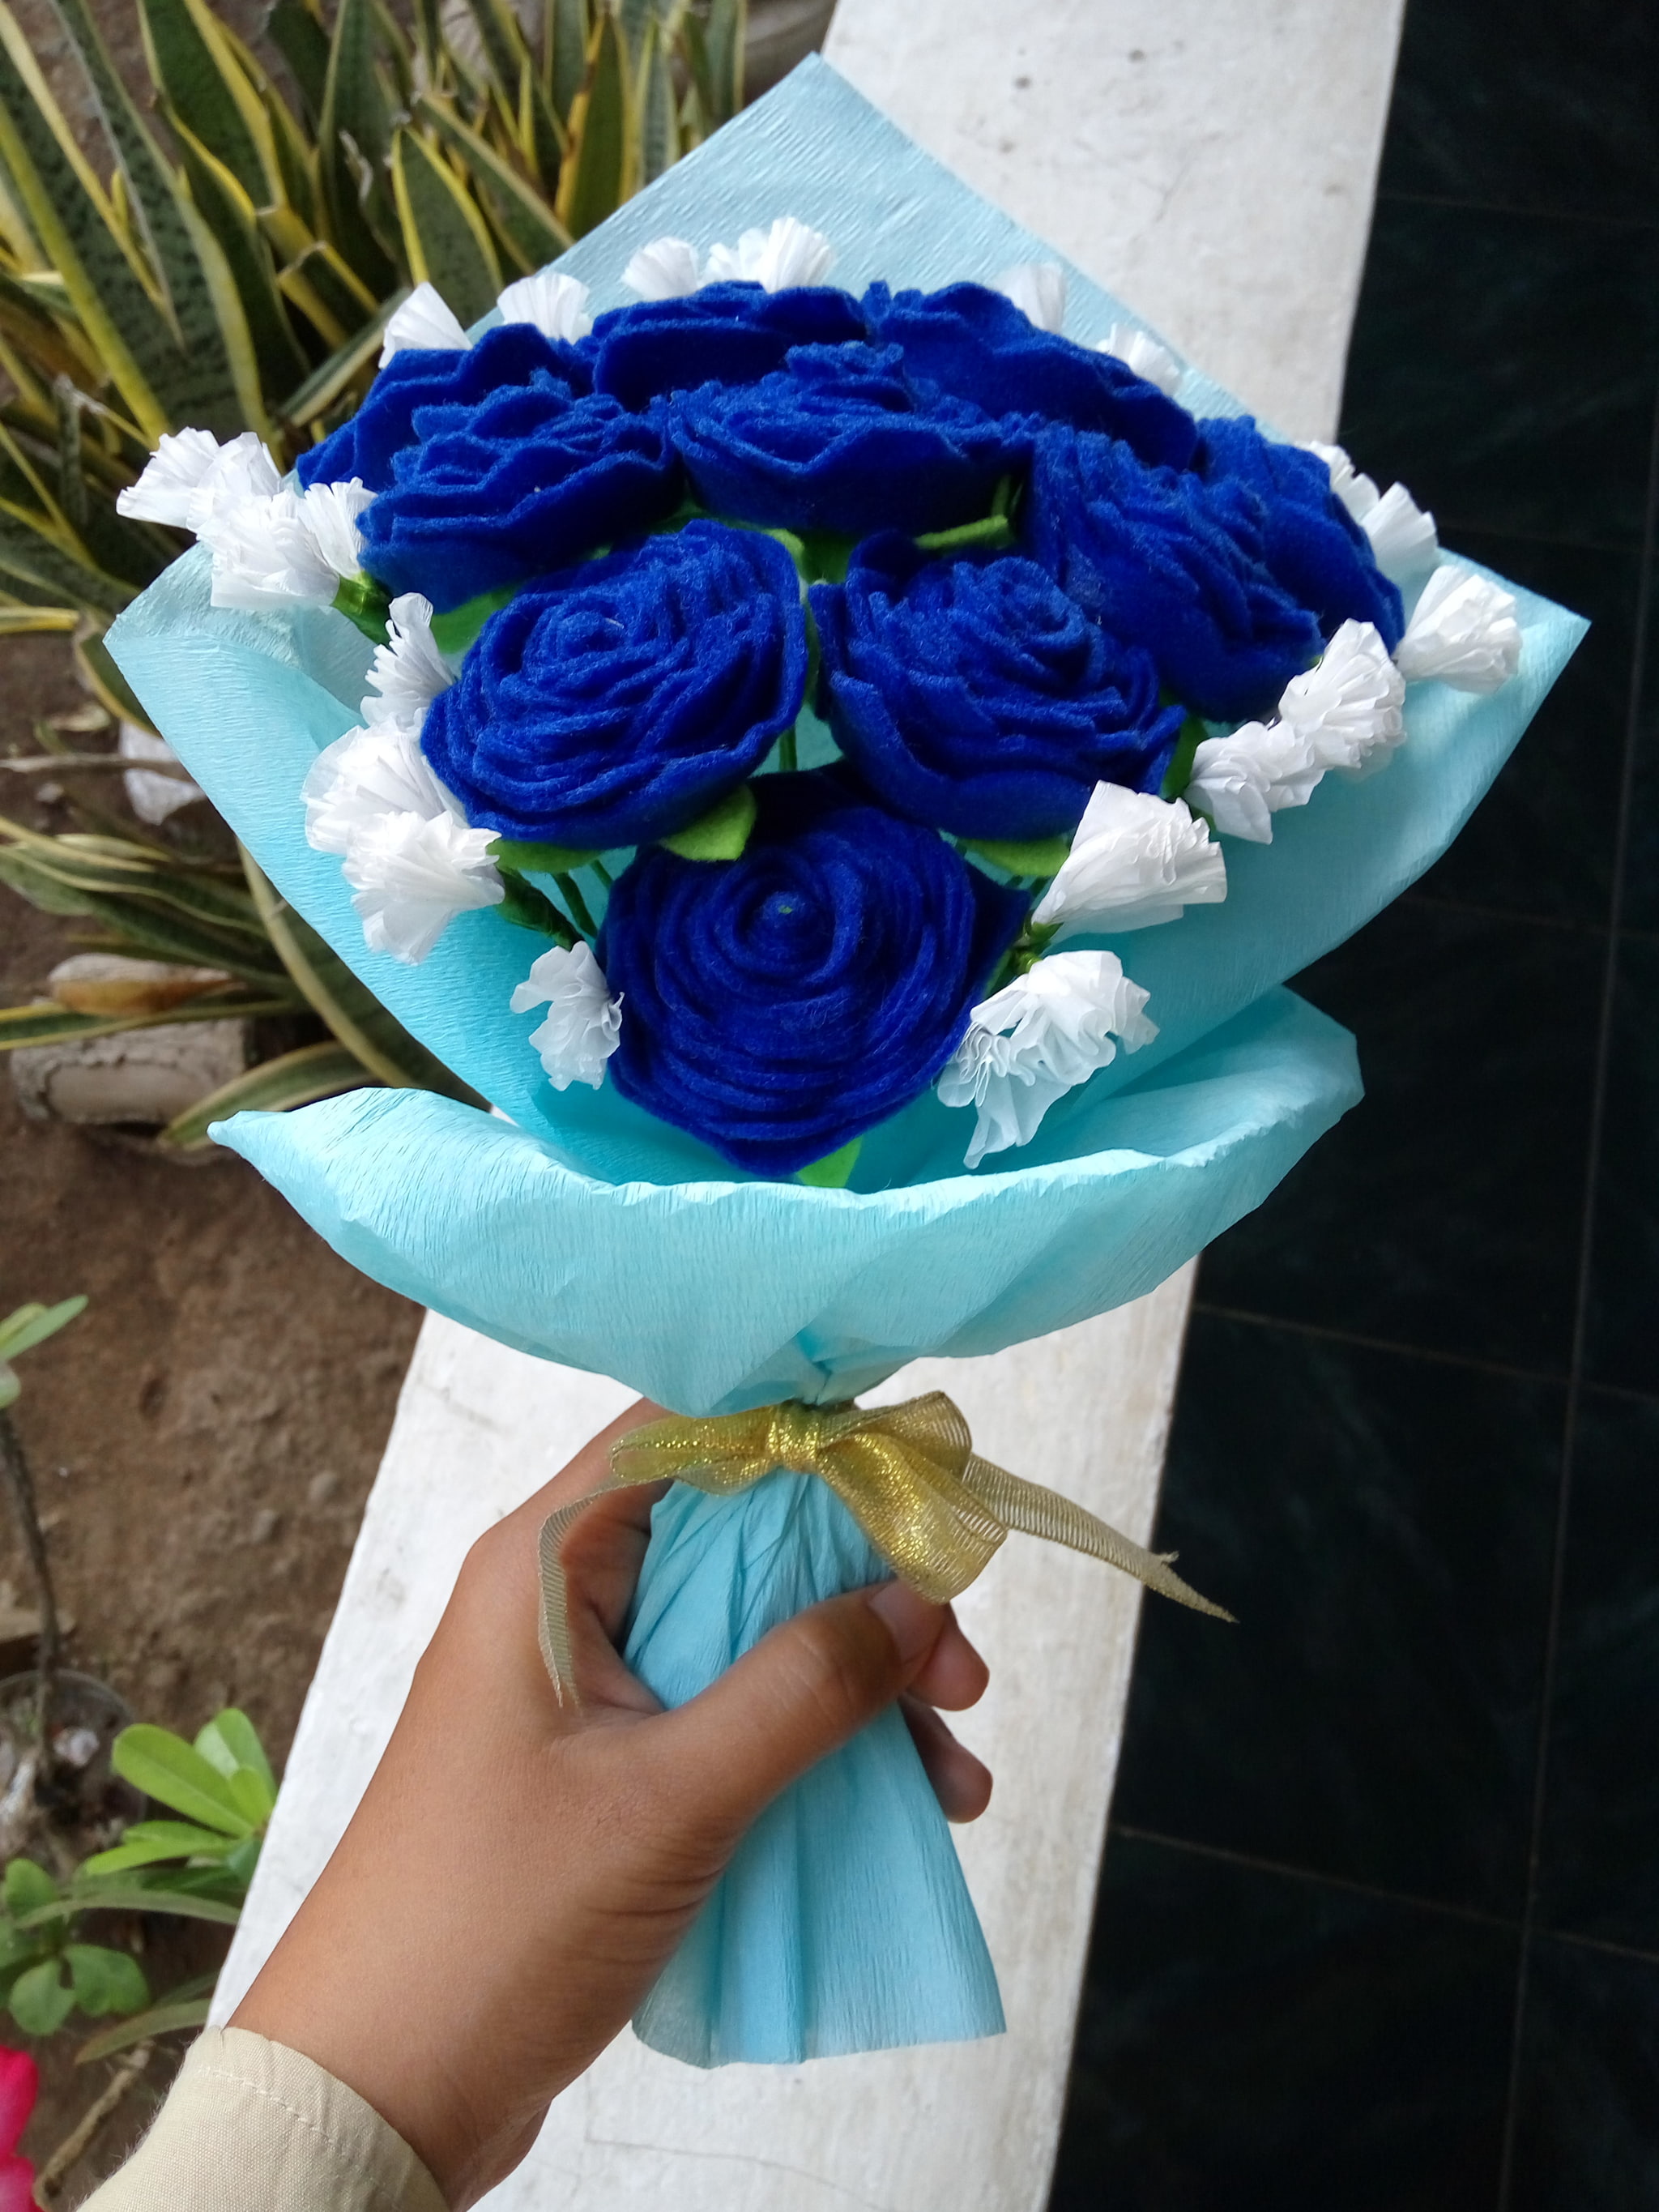 배경 비루 동커,꽃,장미,푸른,파란 장미,꽃다발